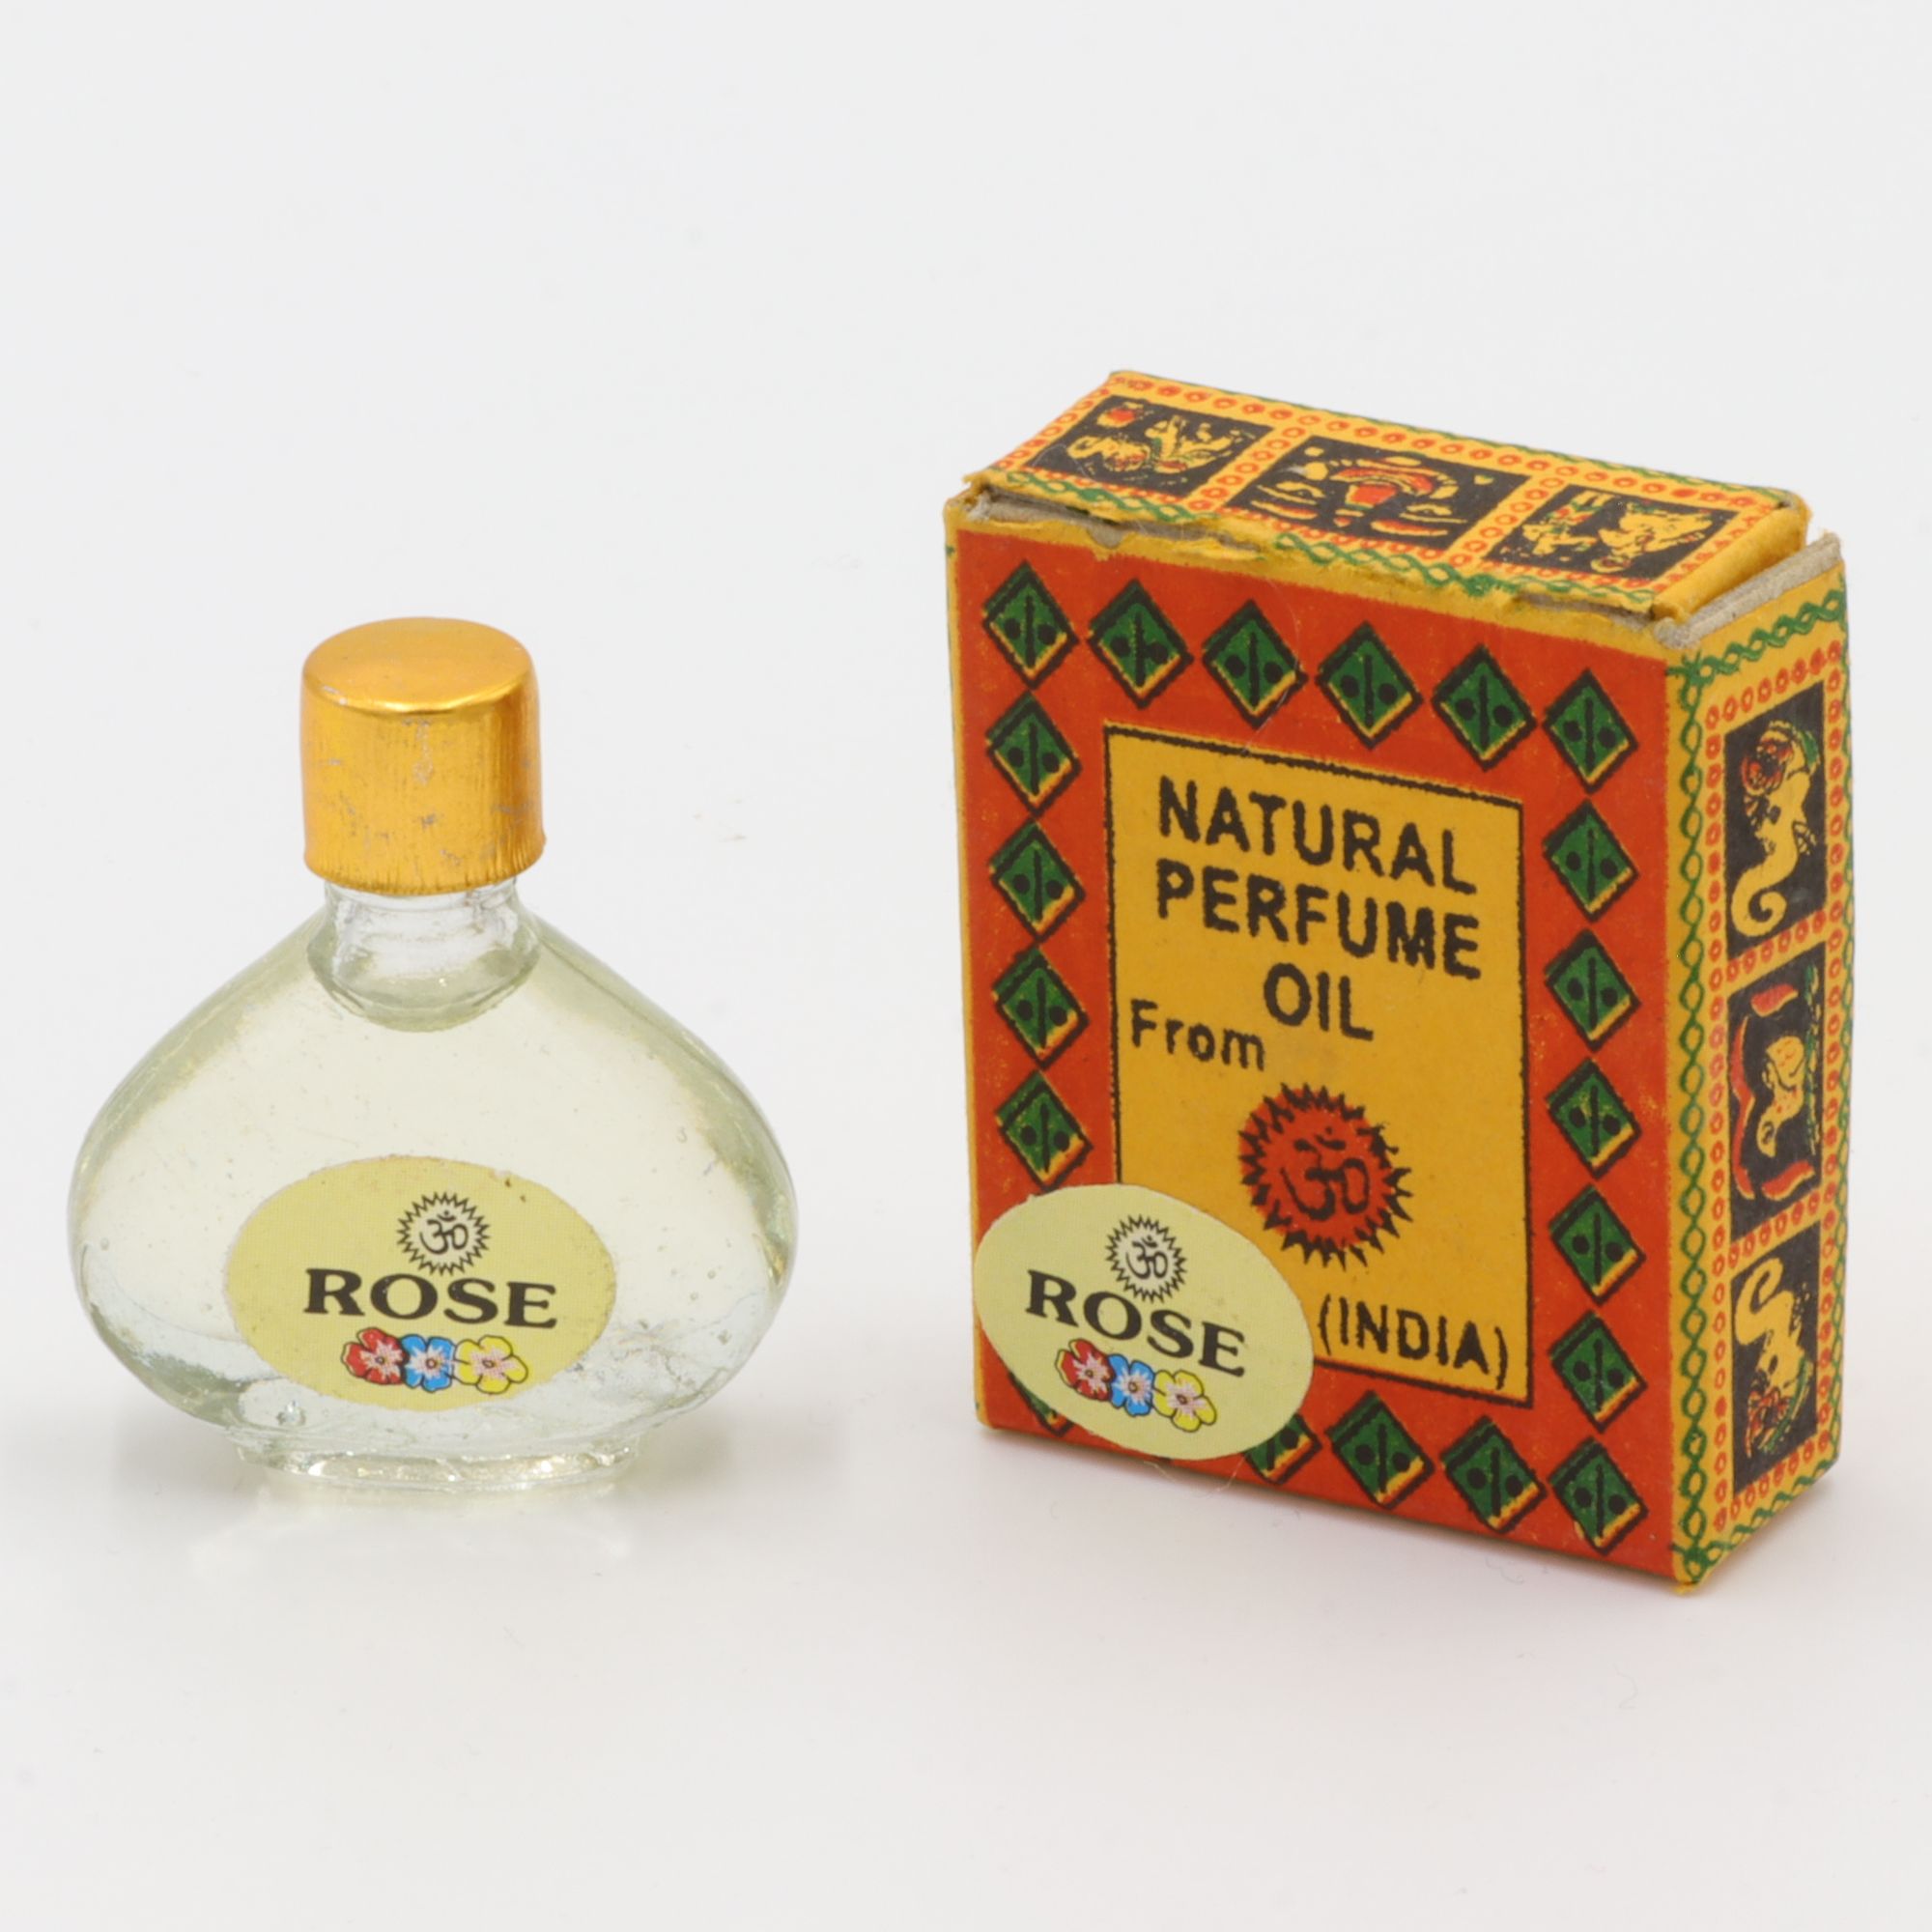 Natürliches Parfüm Öl - Om Expo - Rose - betörender Duft aus Indien - in süßem Flakon aus Glas